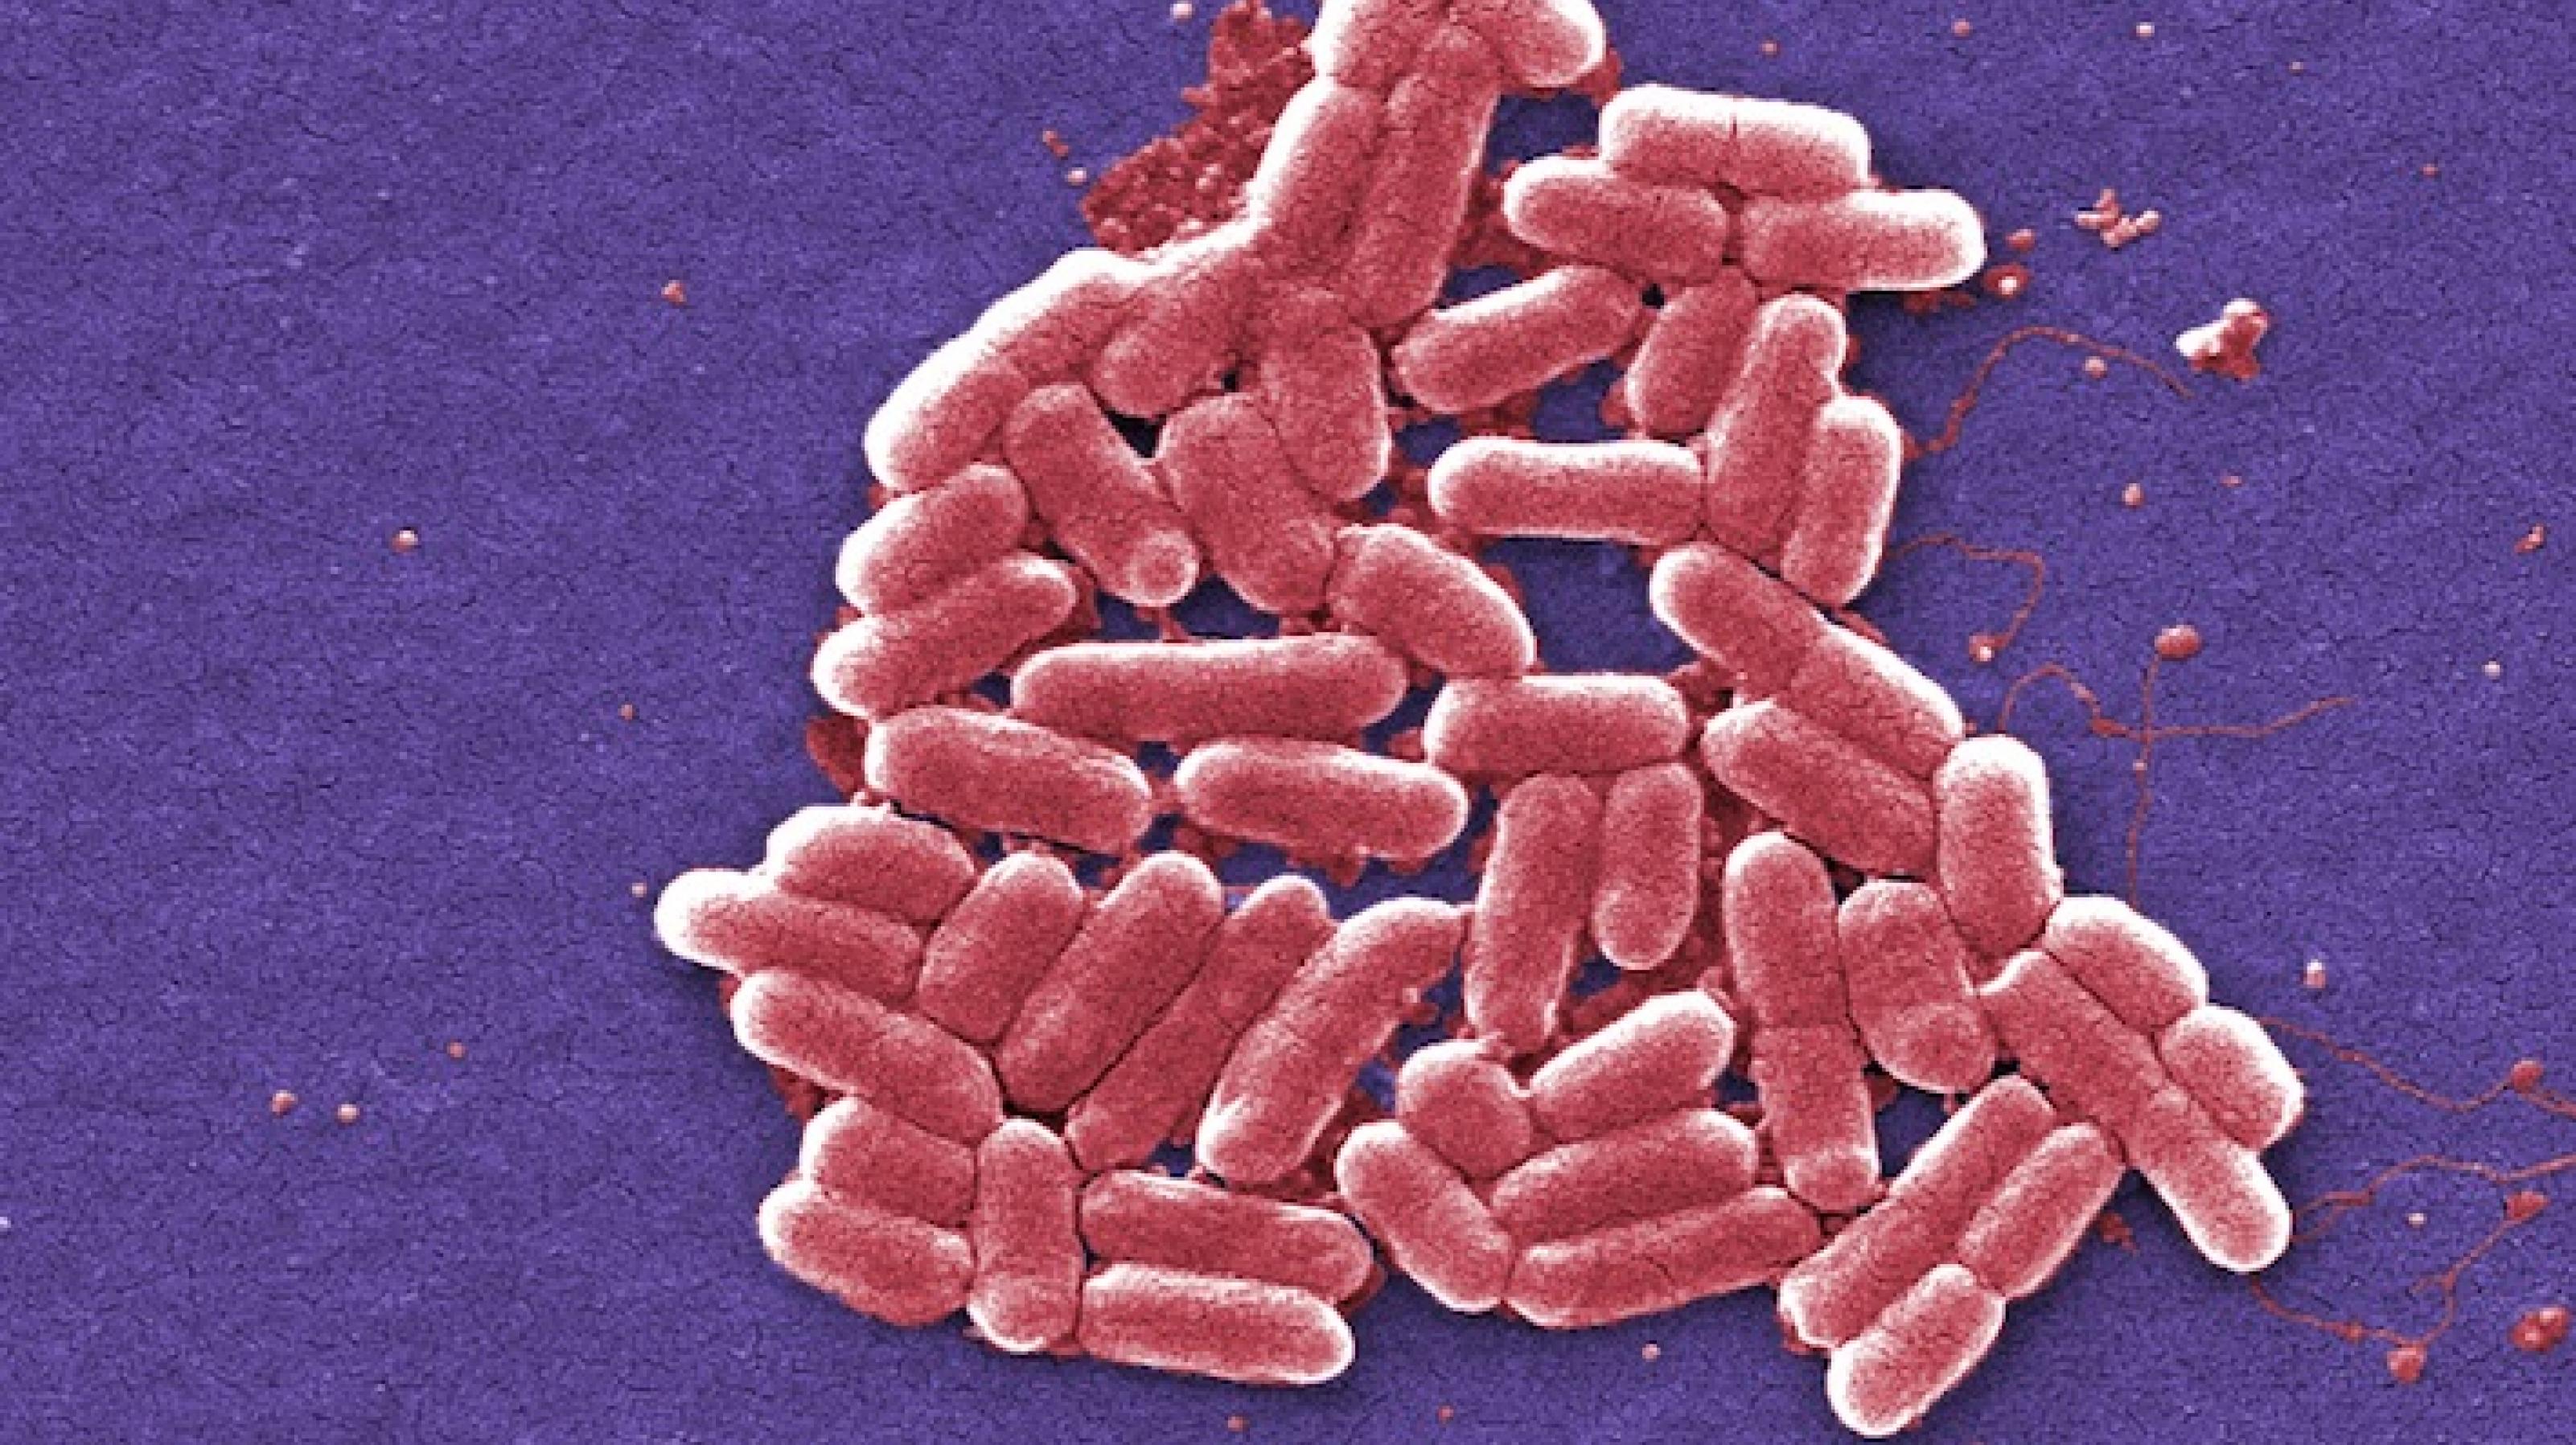 Stäbchenförmige Bakterien, rosa angefärbt, unter dem Mikroskop